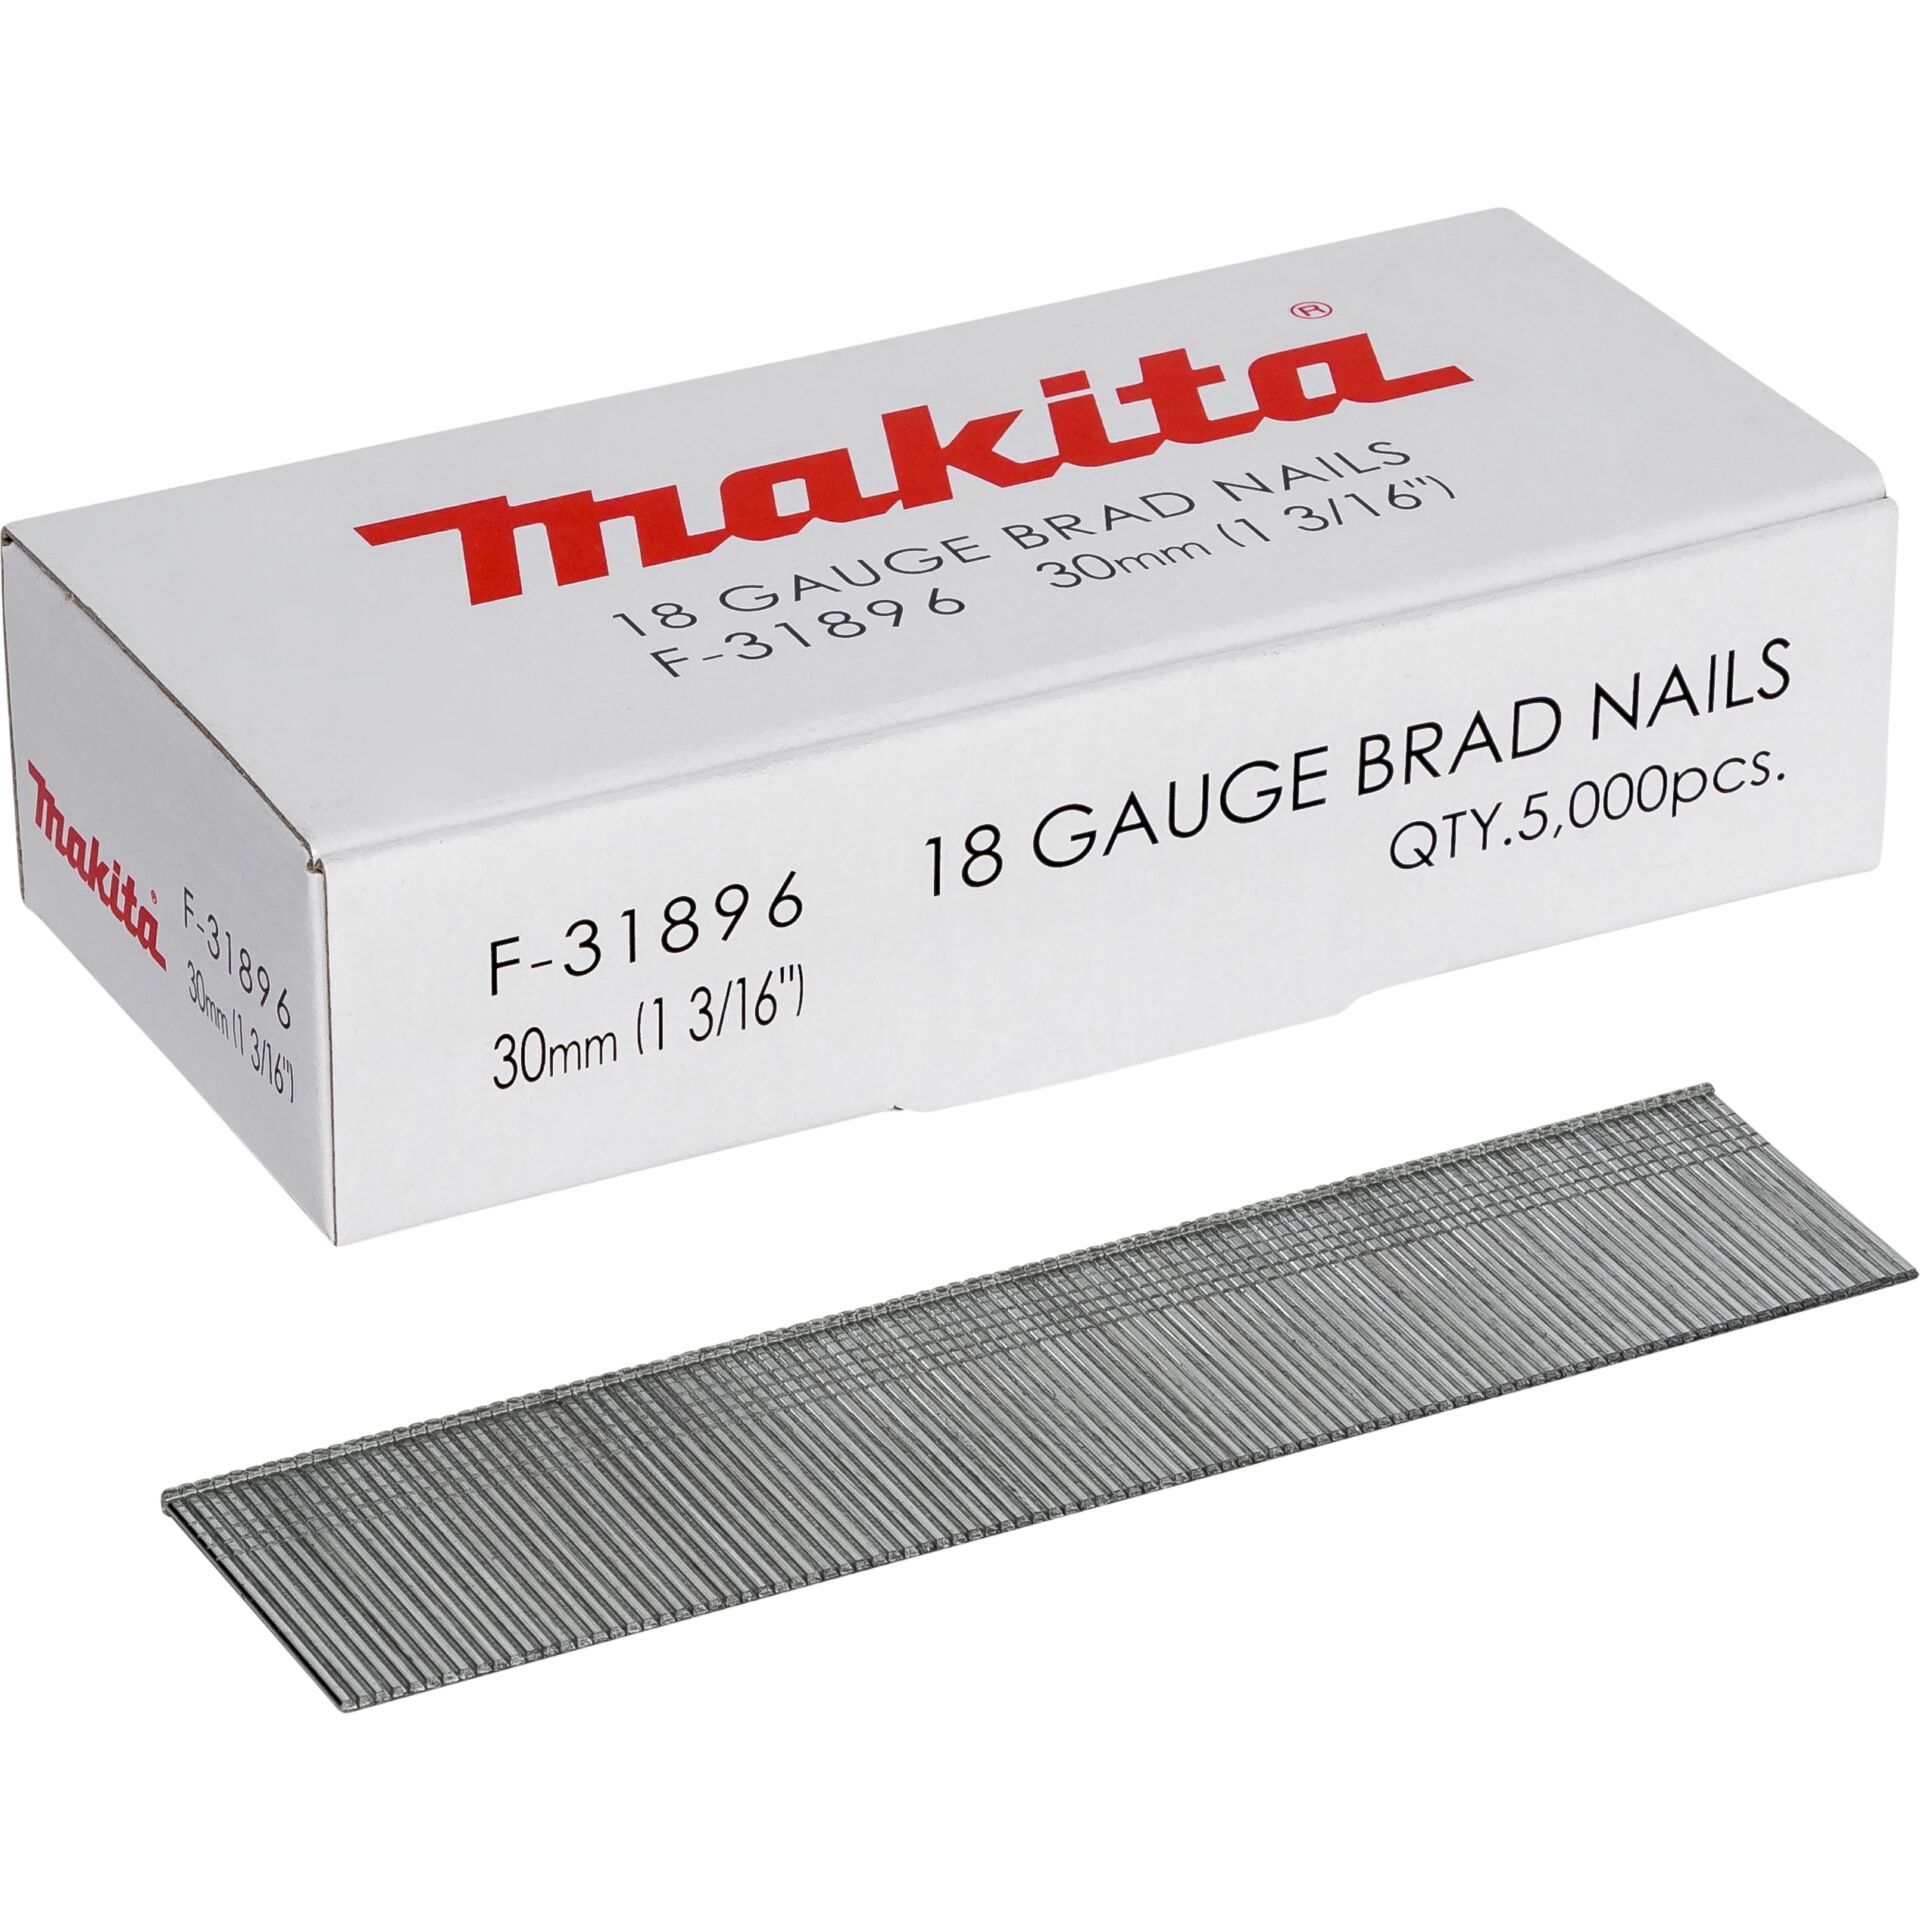 Makita Gauge Brad Nails 1,2x30mm F-31896  5000 pcs.